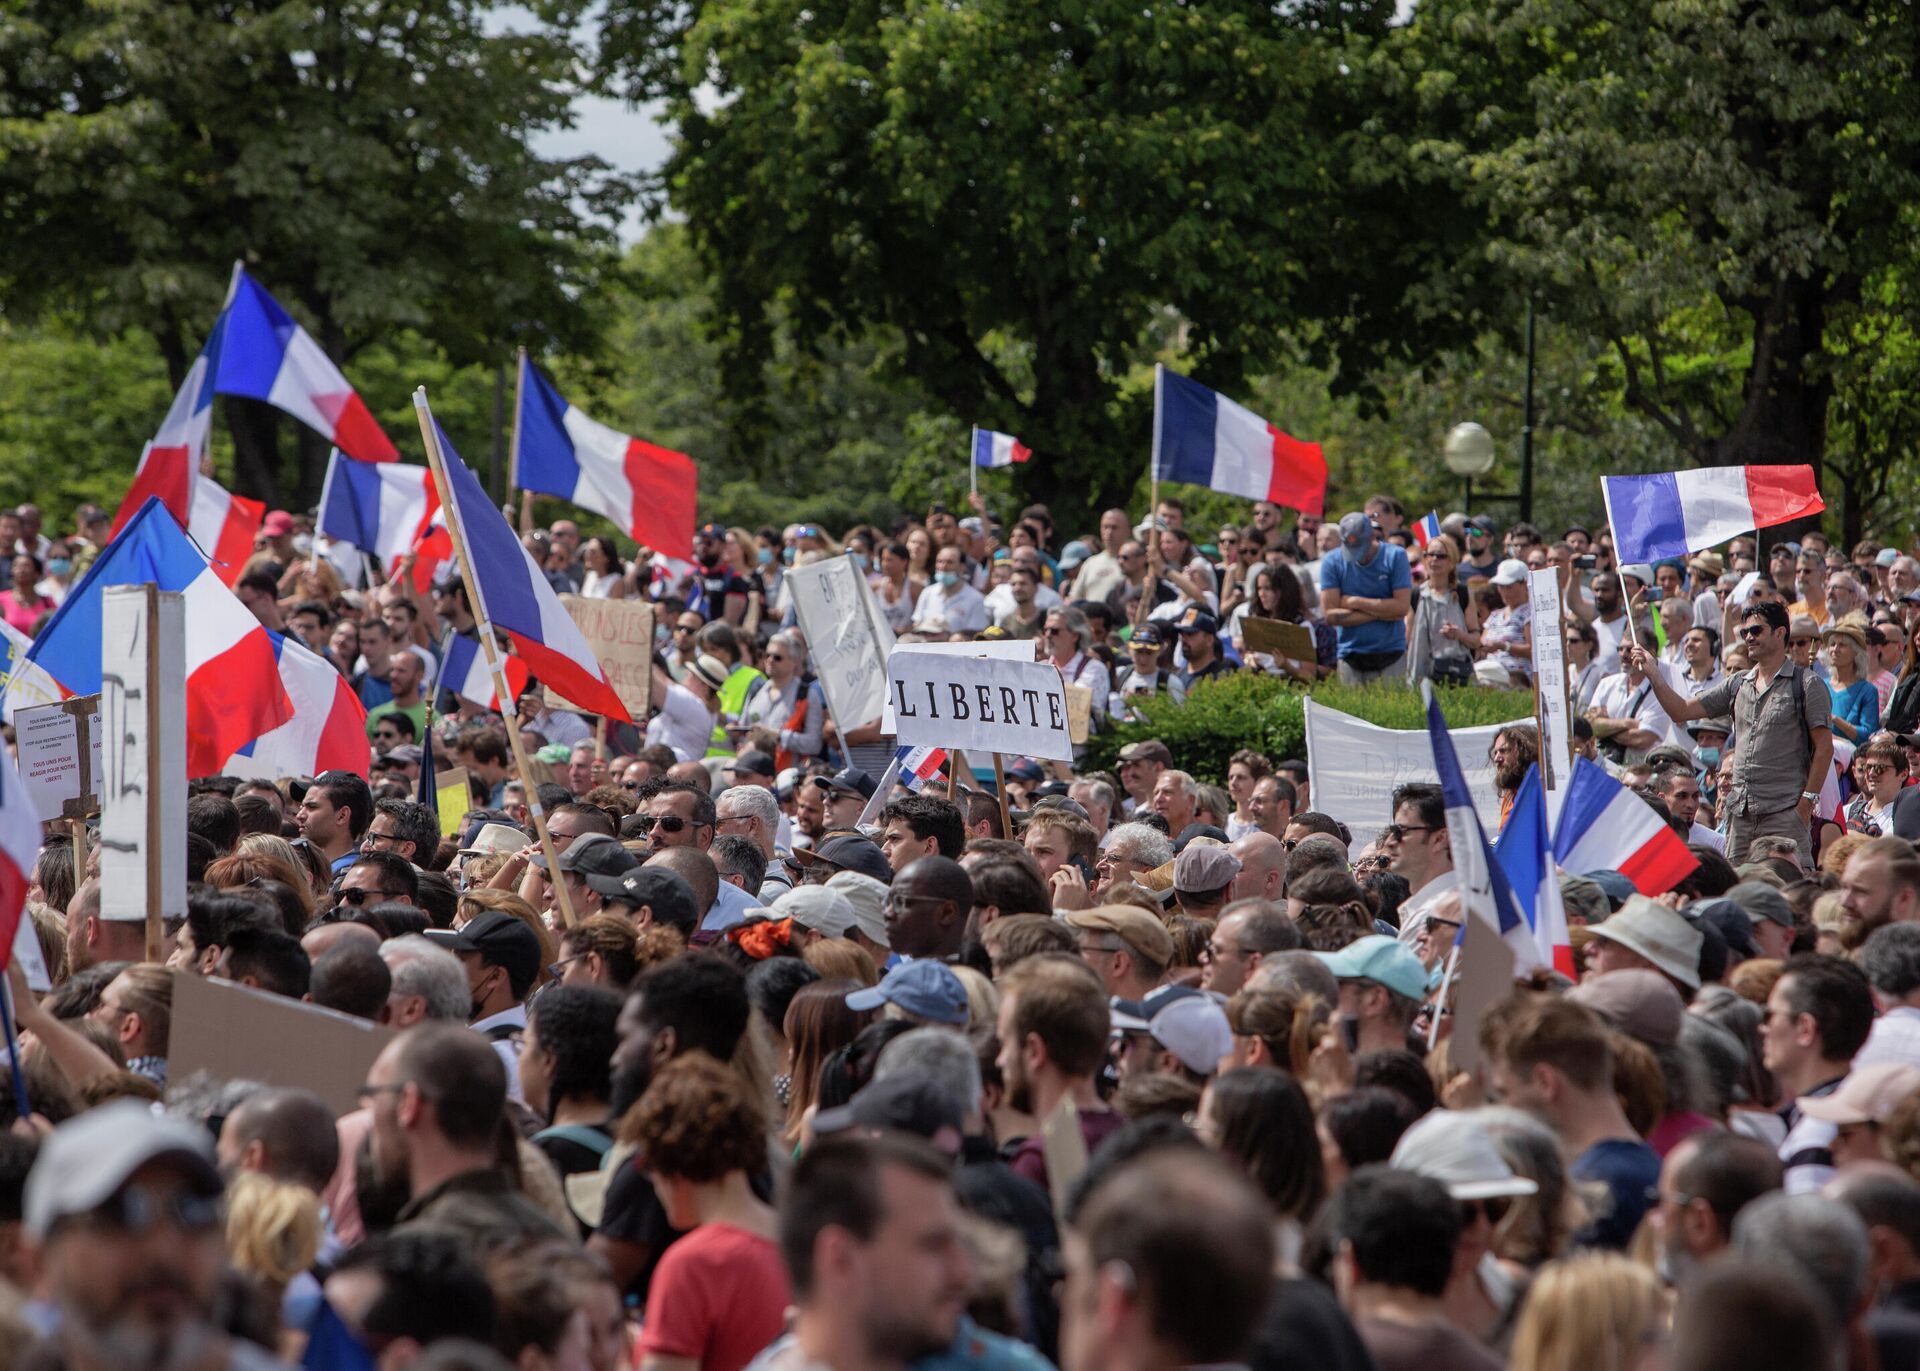 Miles de manifestantes se reúnen en la Plaza del Trocadero cerca de la Torre Eiffel para protestar contra pases sanitarios en París, Francia, el 24 de julio de 2021 - Sputnik Mundo, 1920, 25.07.2021